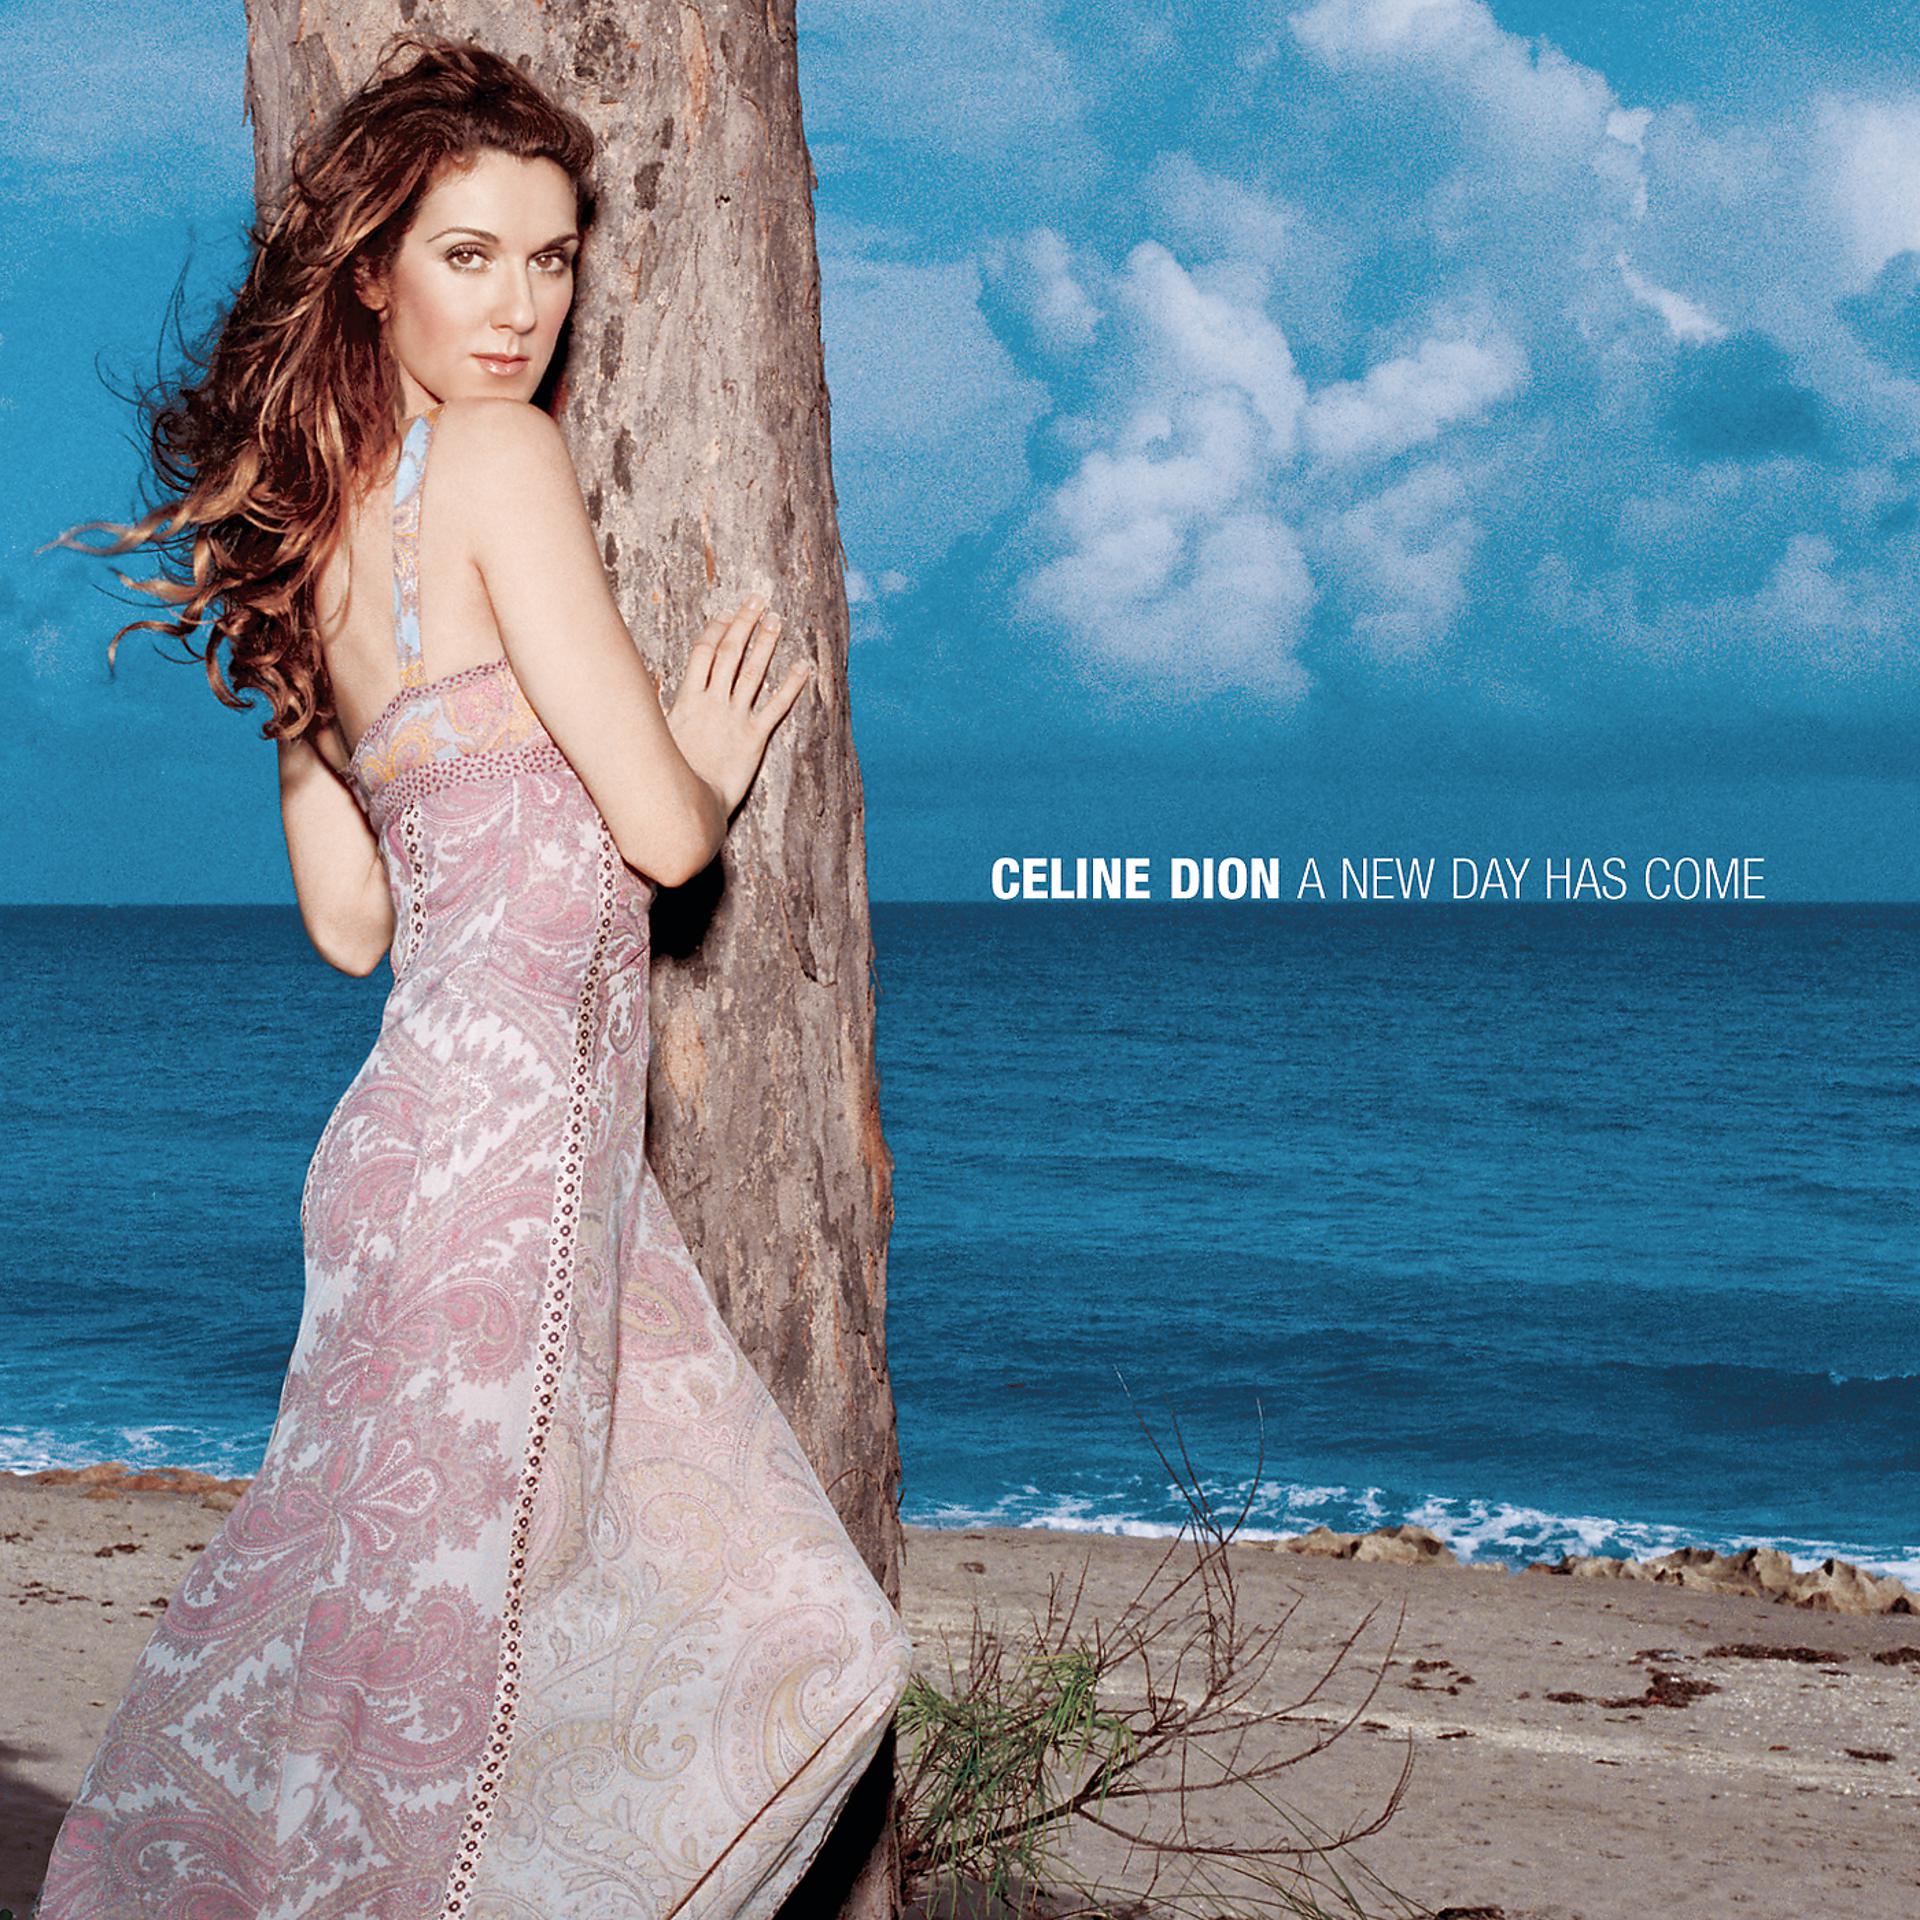 Celine dion a new day has. Celine Dion 2002 a New Day has come. A New Day has come Céline Dion album. A New Day has come Céline Dion album Cover. Céline Dion - a New Day has come (2002).